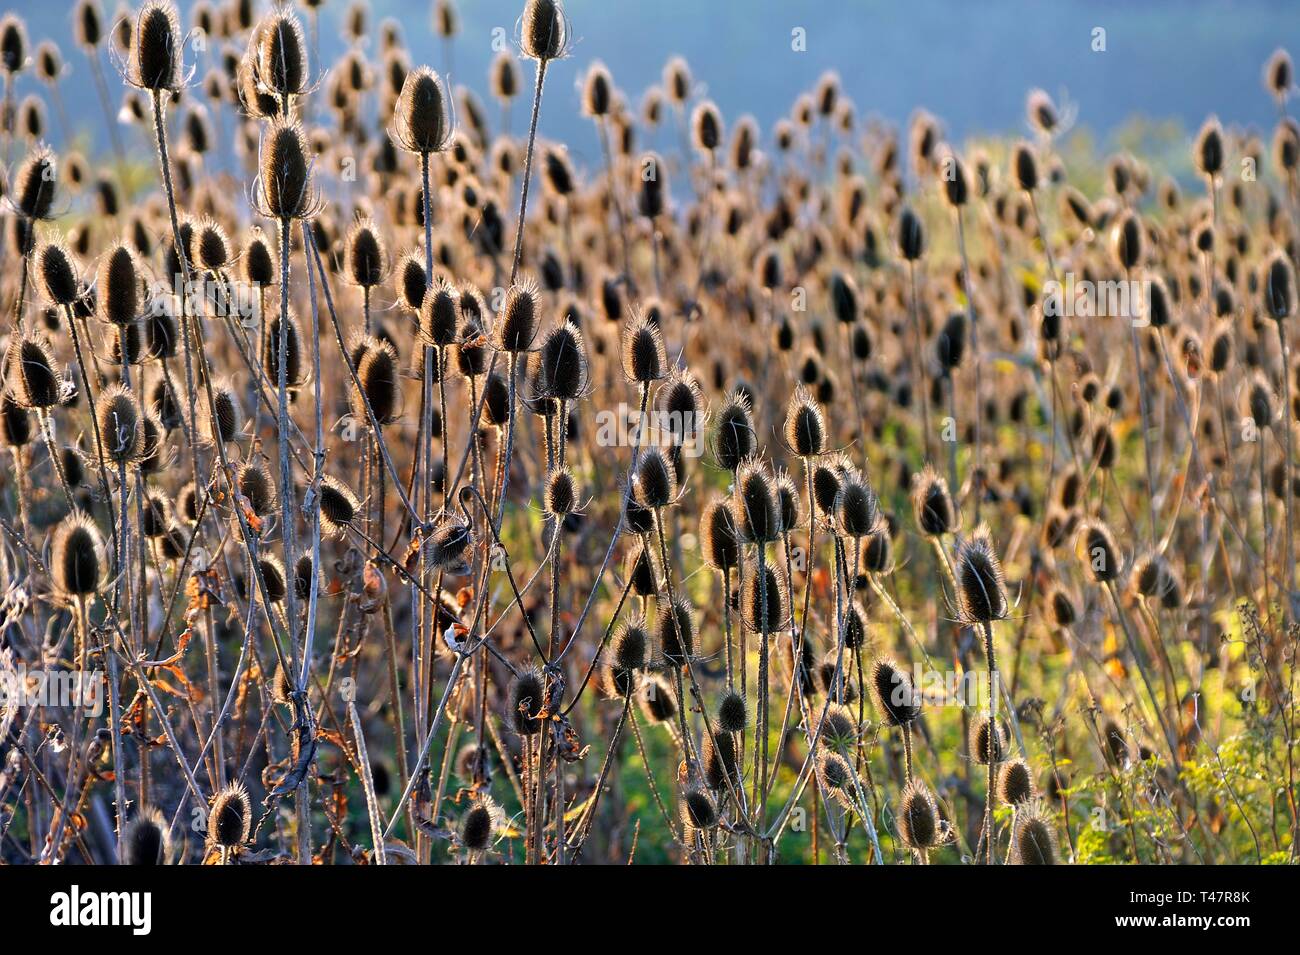 Verblasste Wild teasels (Dipsacus fullonum) im Gegenlicht, Mittelfranken, Bayern, Deutschland Stockfoto